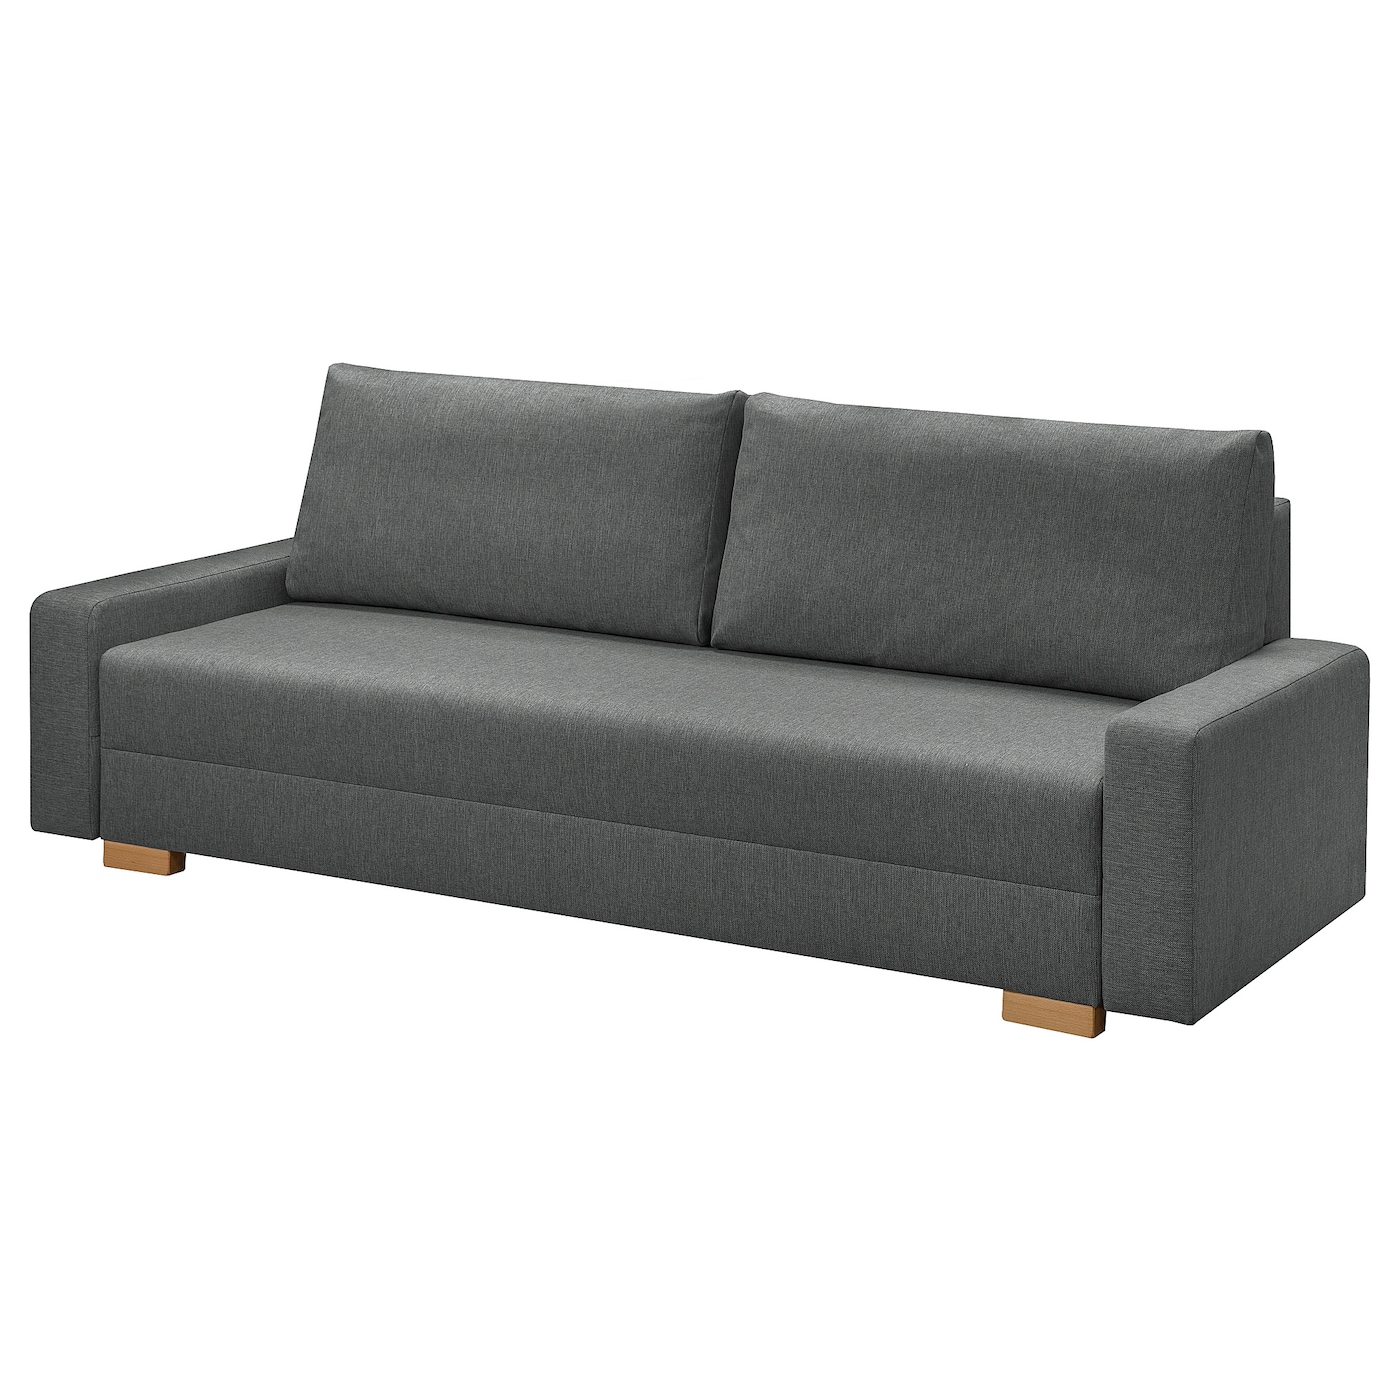 3-местный диван-кровать - IKEA GRÄLVIKEN/GRALVIKEN, 74x86x225см, темно-серый, ГРЭЛВИКЕН ИКЕА